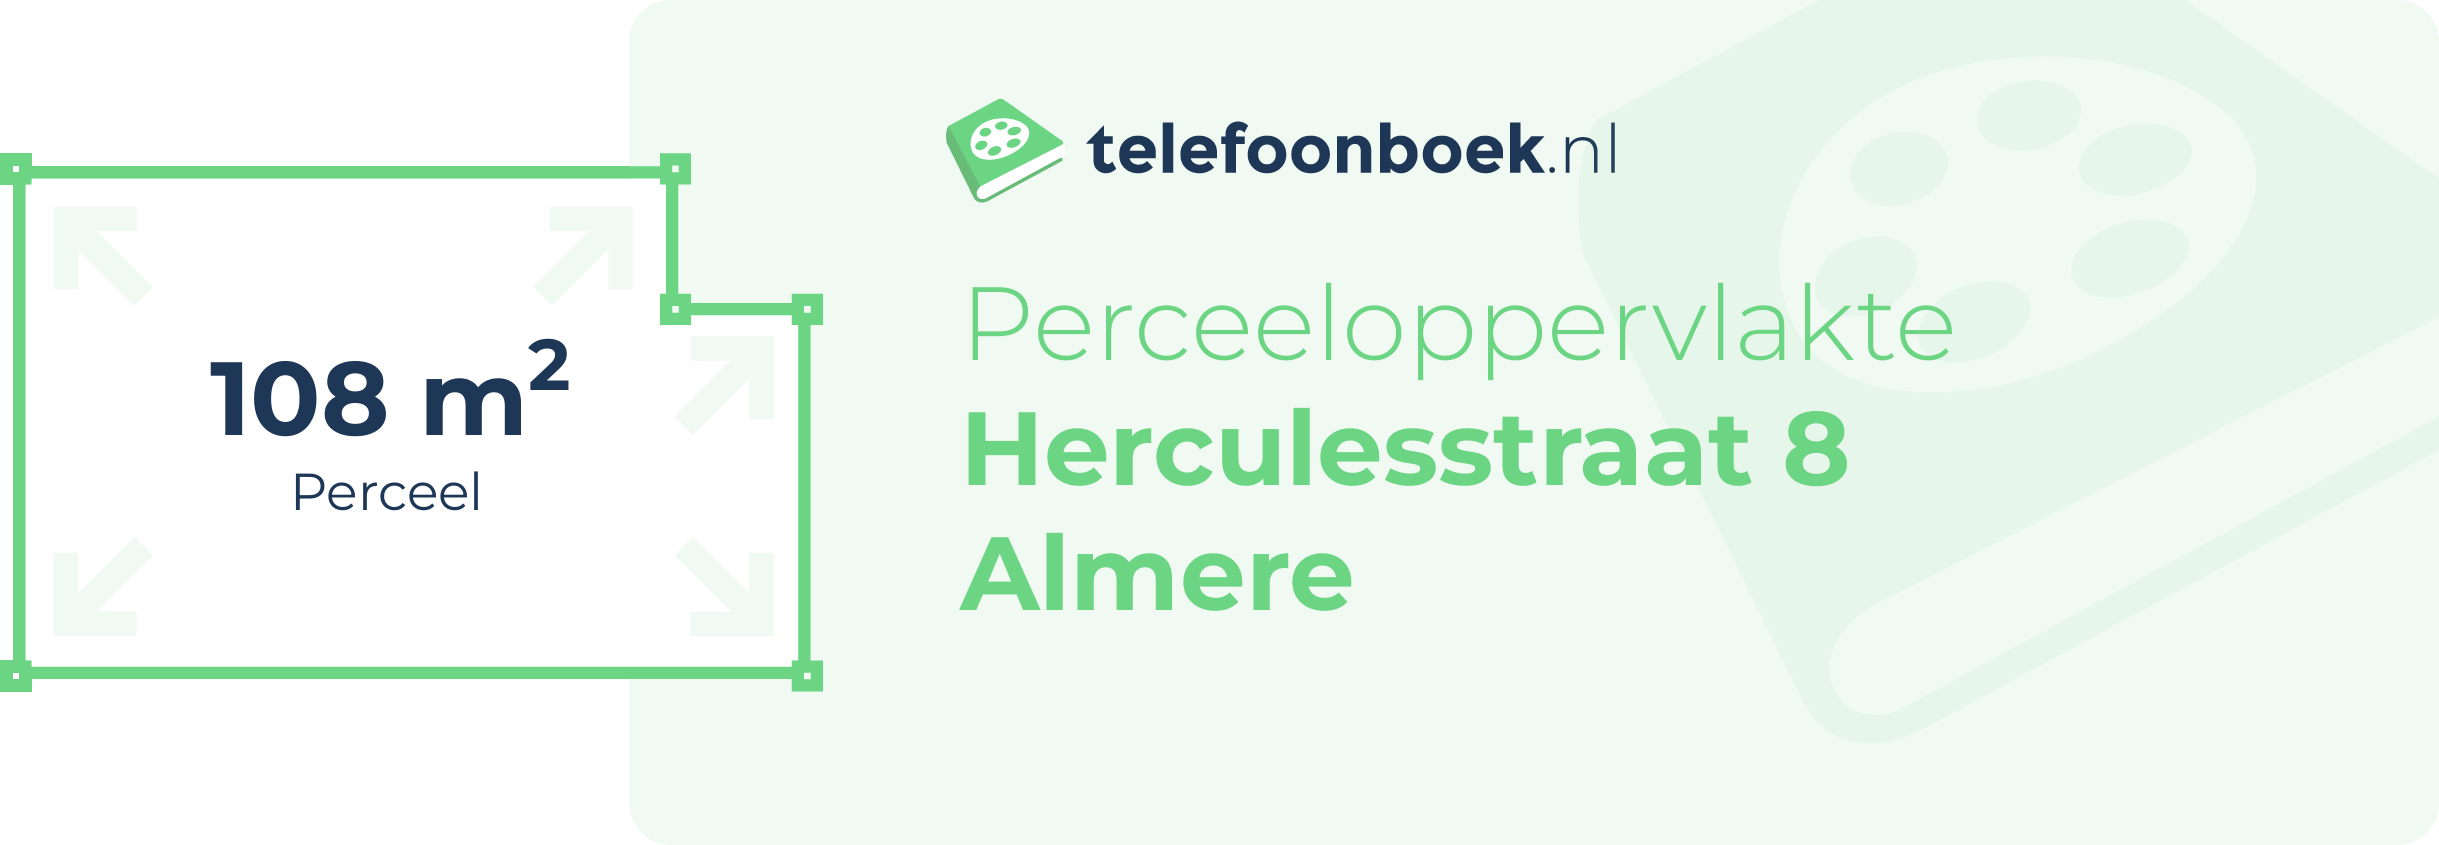 Perceeloppervlakte Herculesstraat 8 Almere